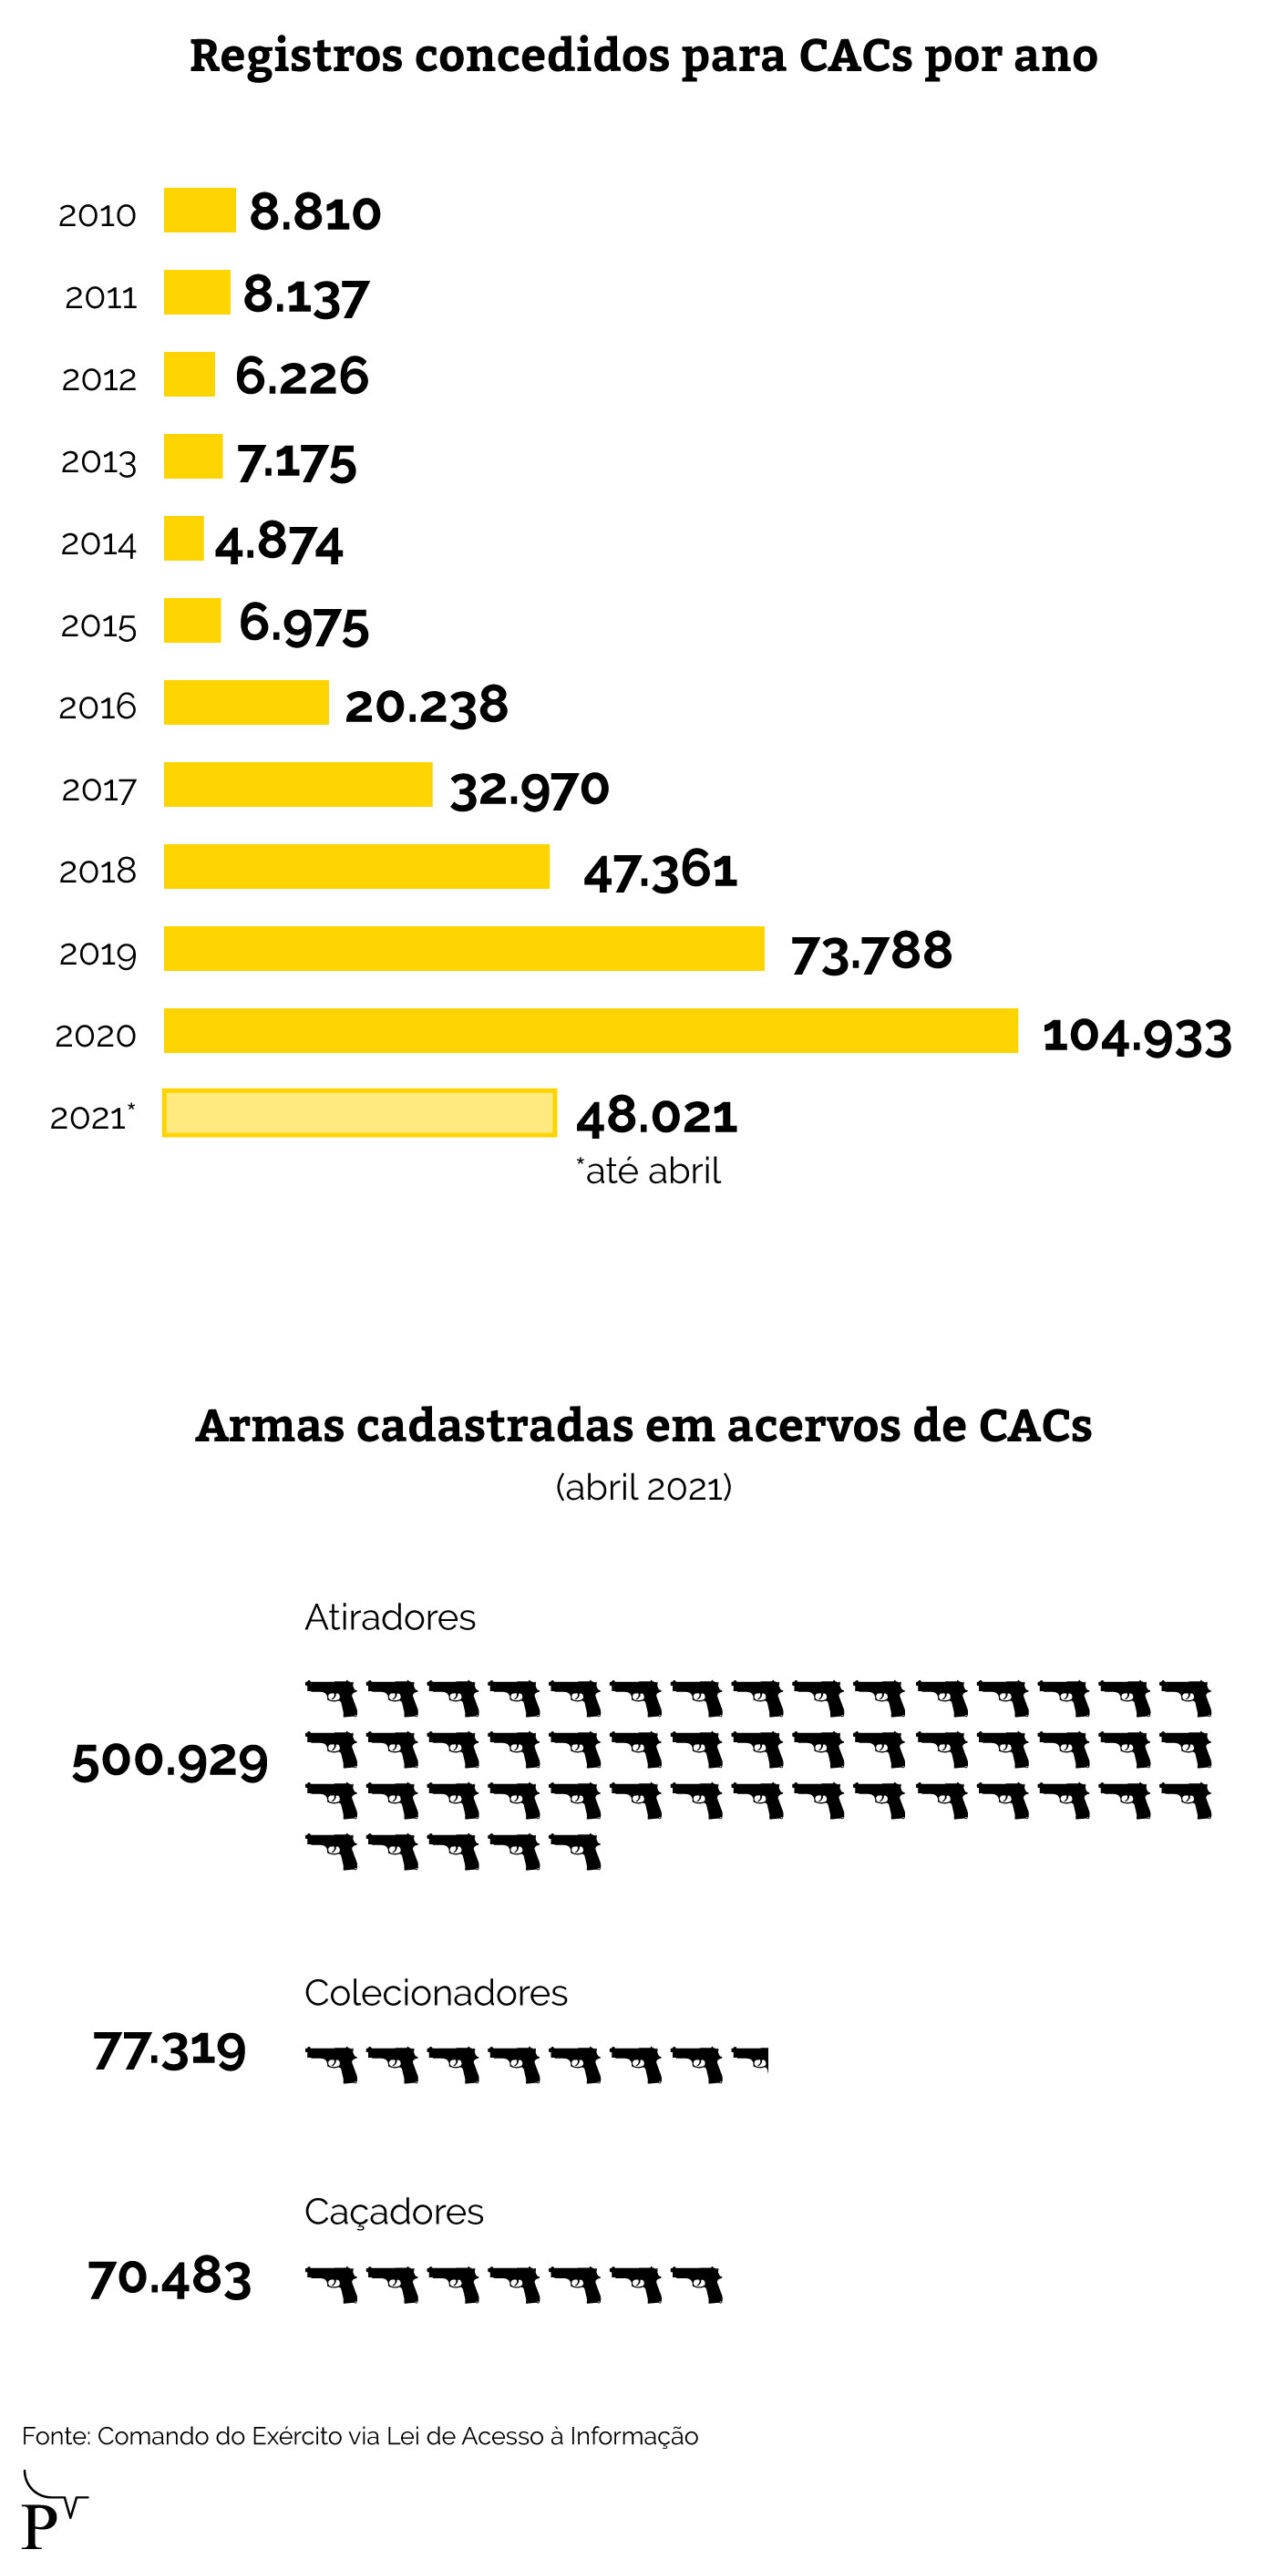 Infográfico sobre registros de armas concedidos para CACs em cada ano